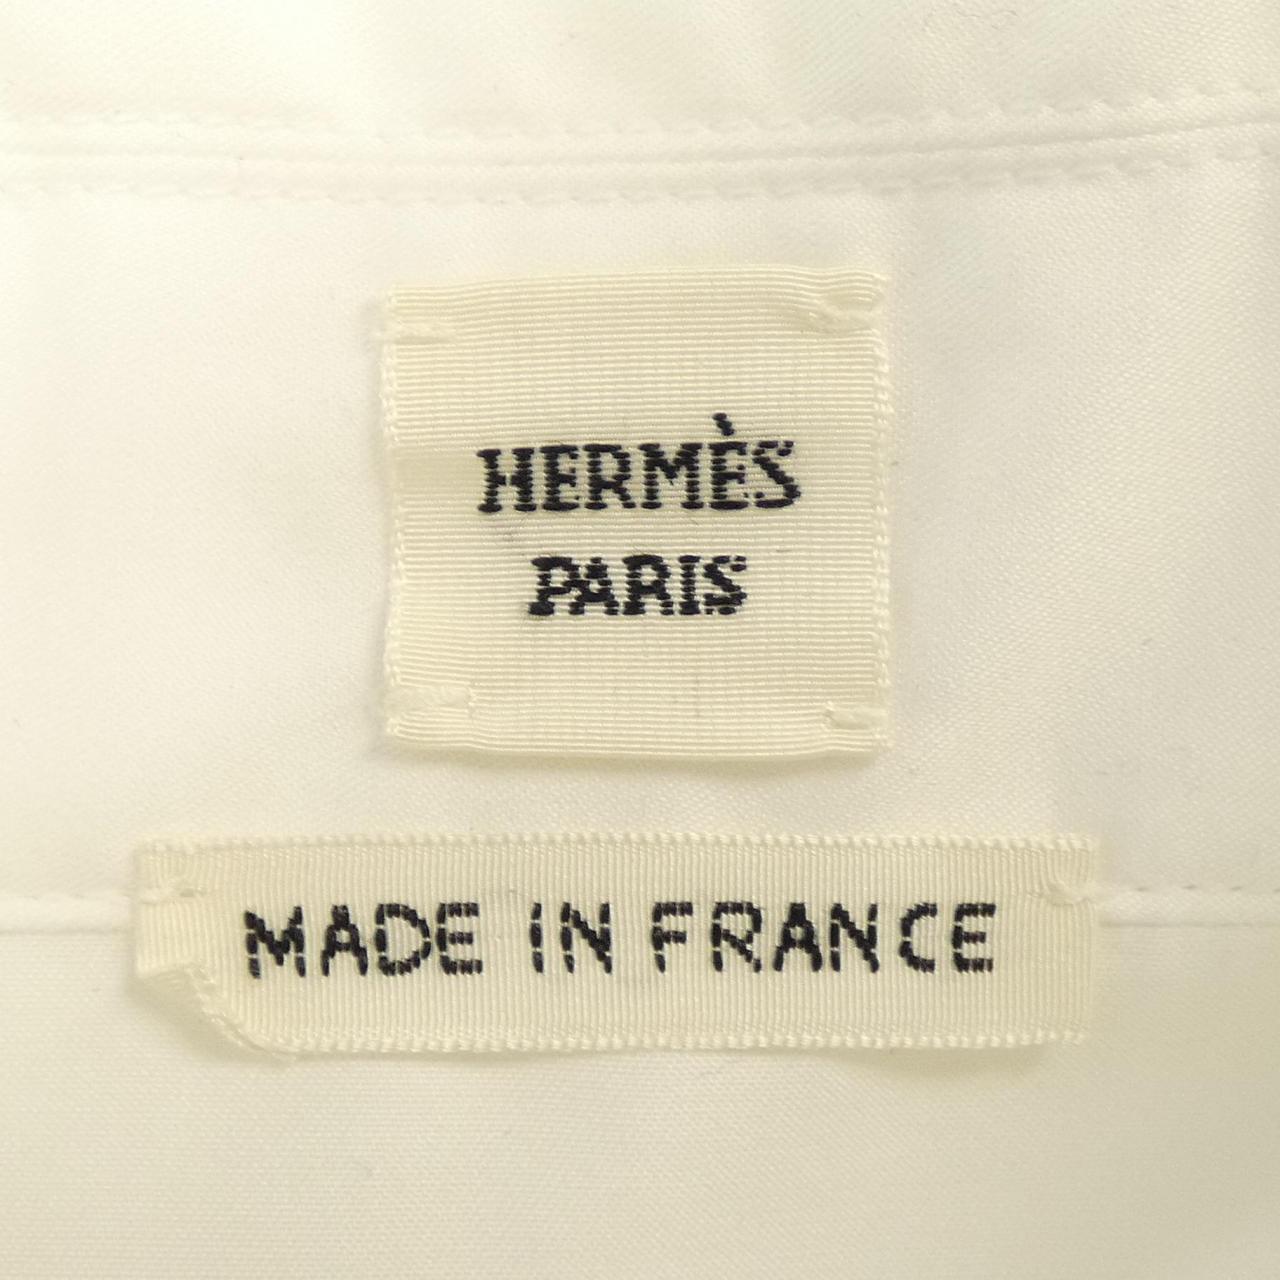 HERMES HERMES Shirt